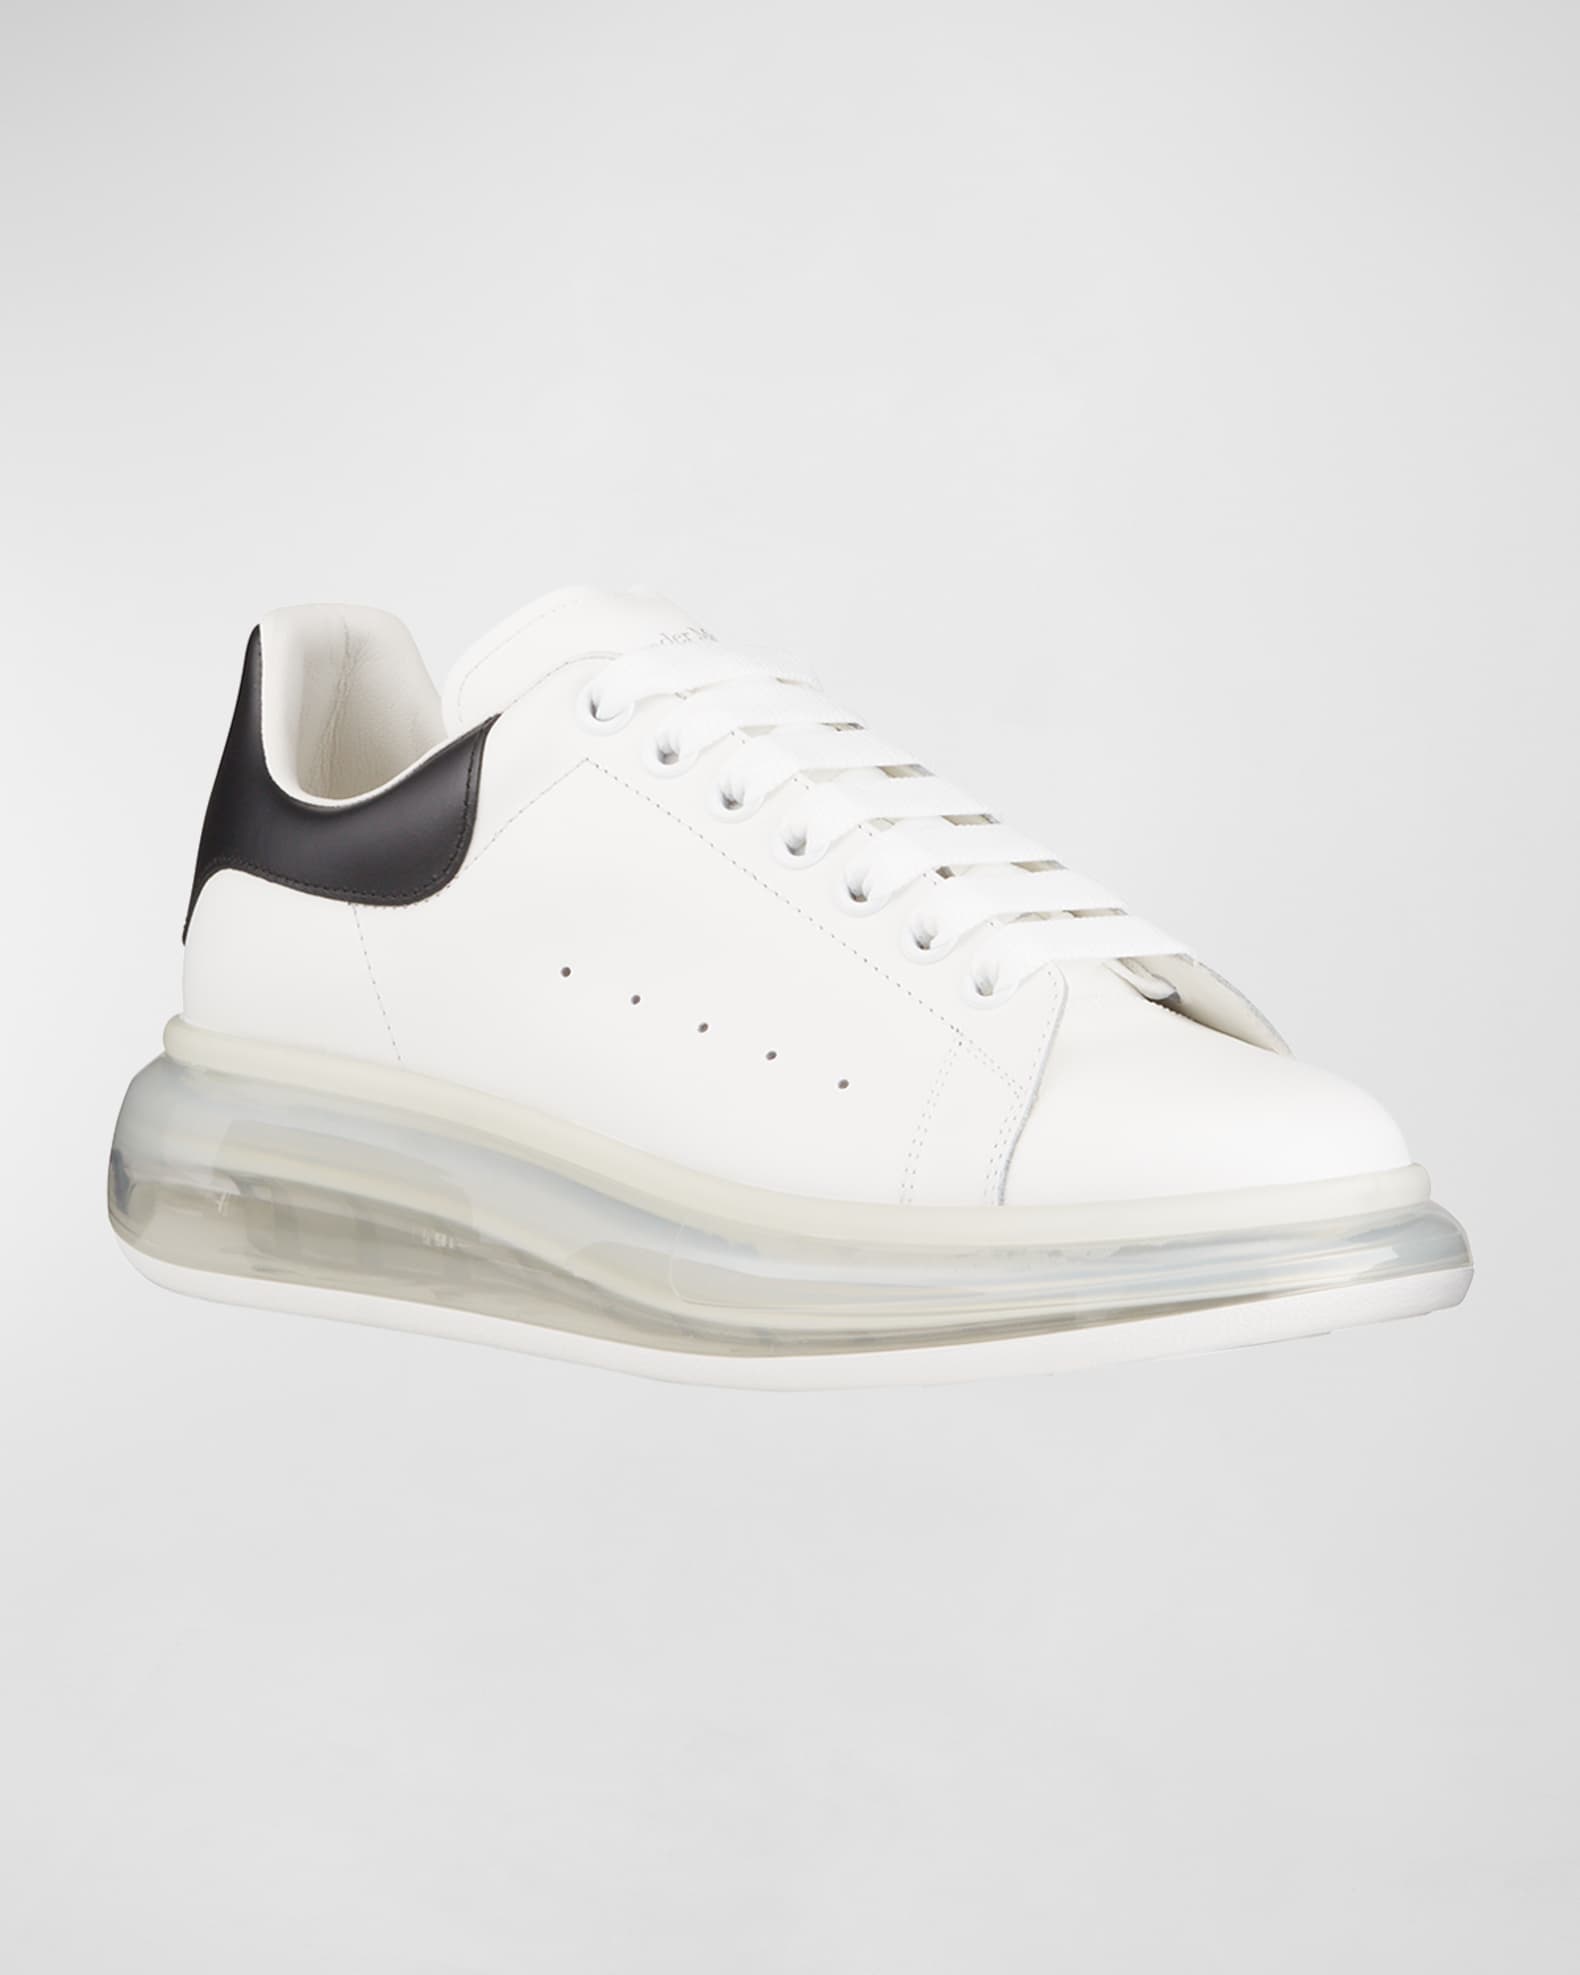 Shop Alexander McQueen Men's Glitter Transparent Sole Oversized Sneakers